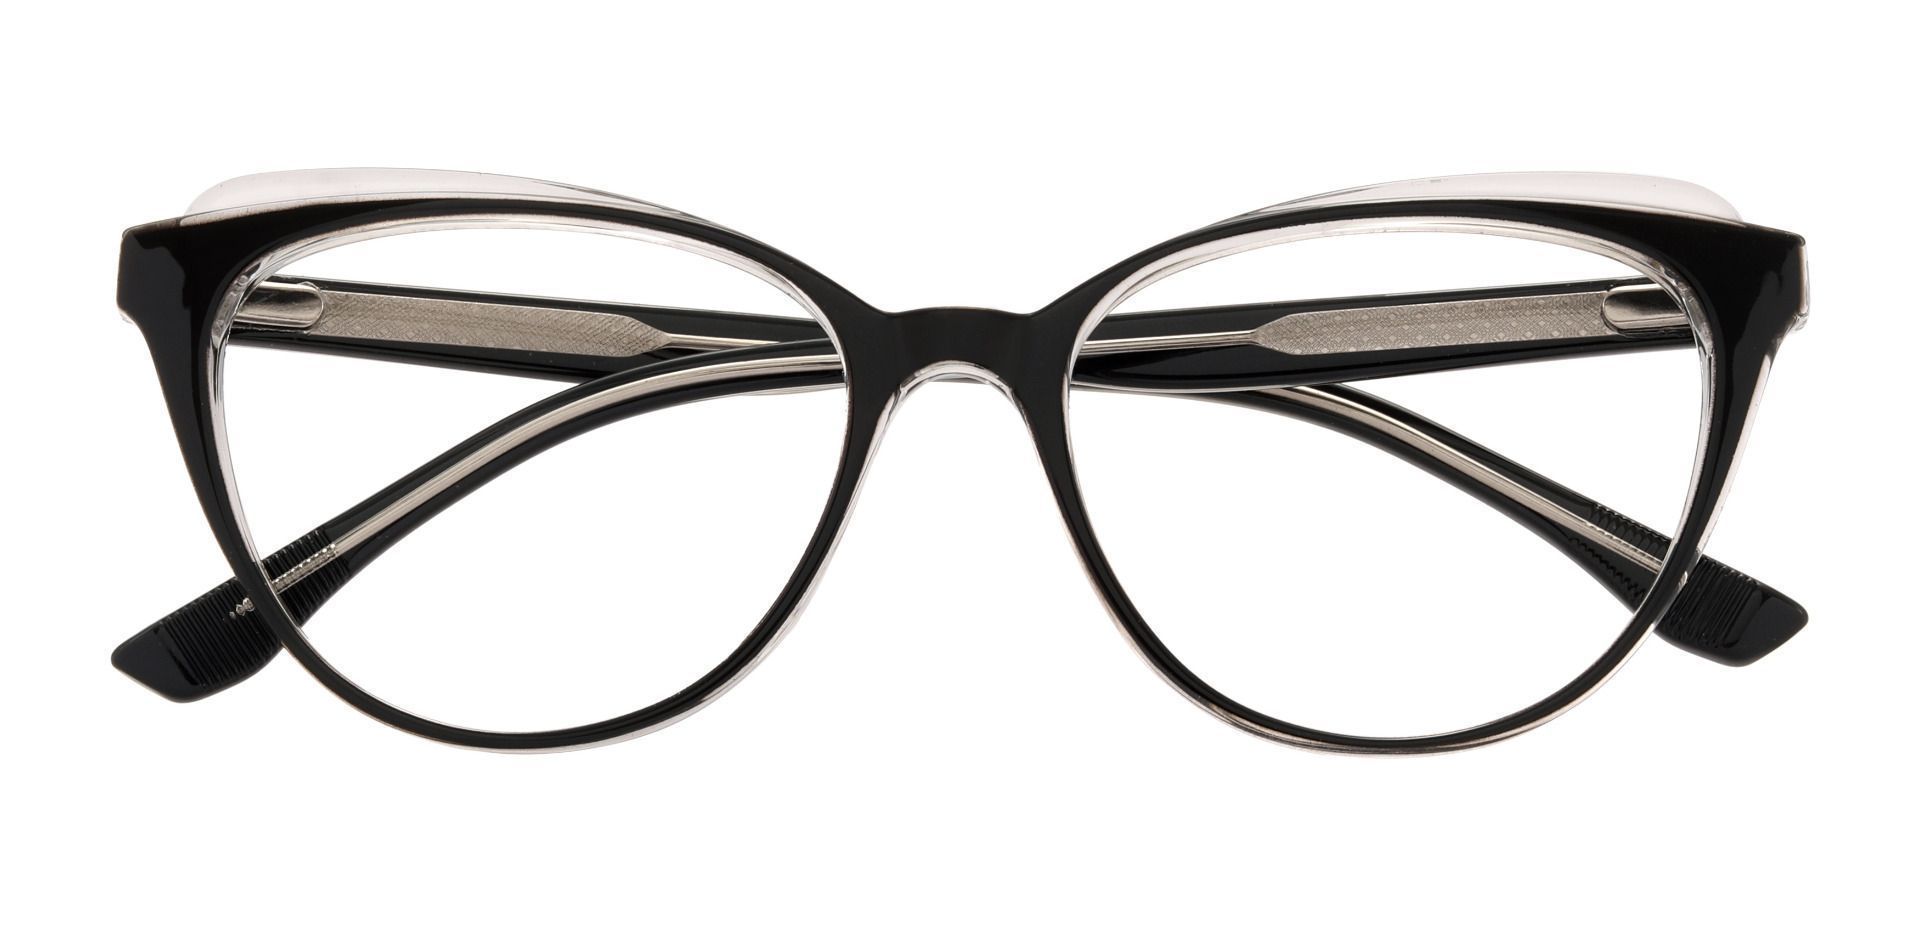 Emilia Cat Eye Prescription Glasses Black Women S Eyeglasses Payne Glasses